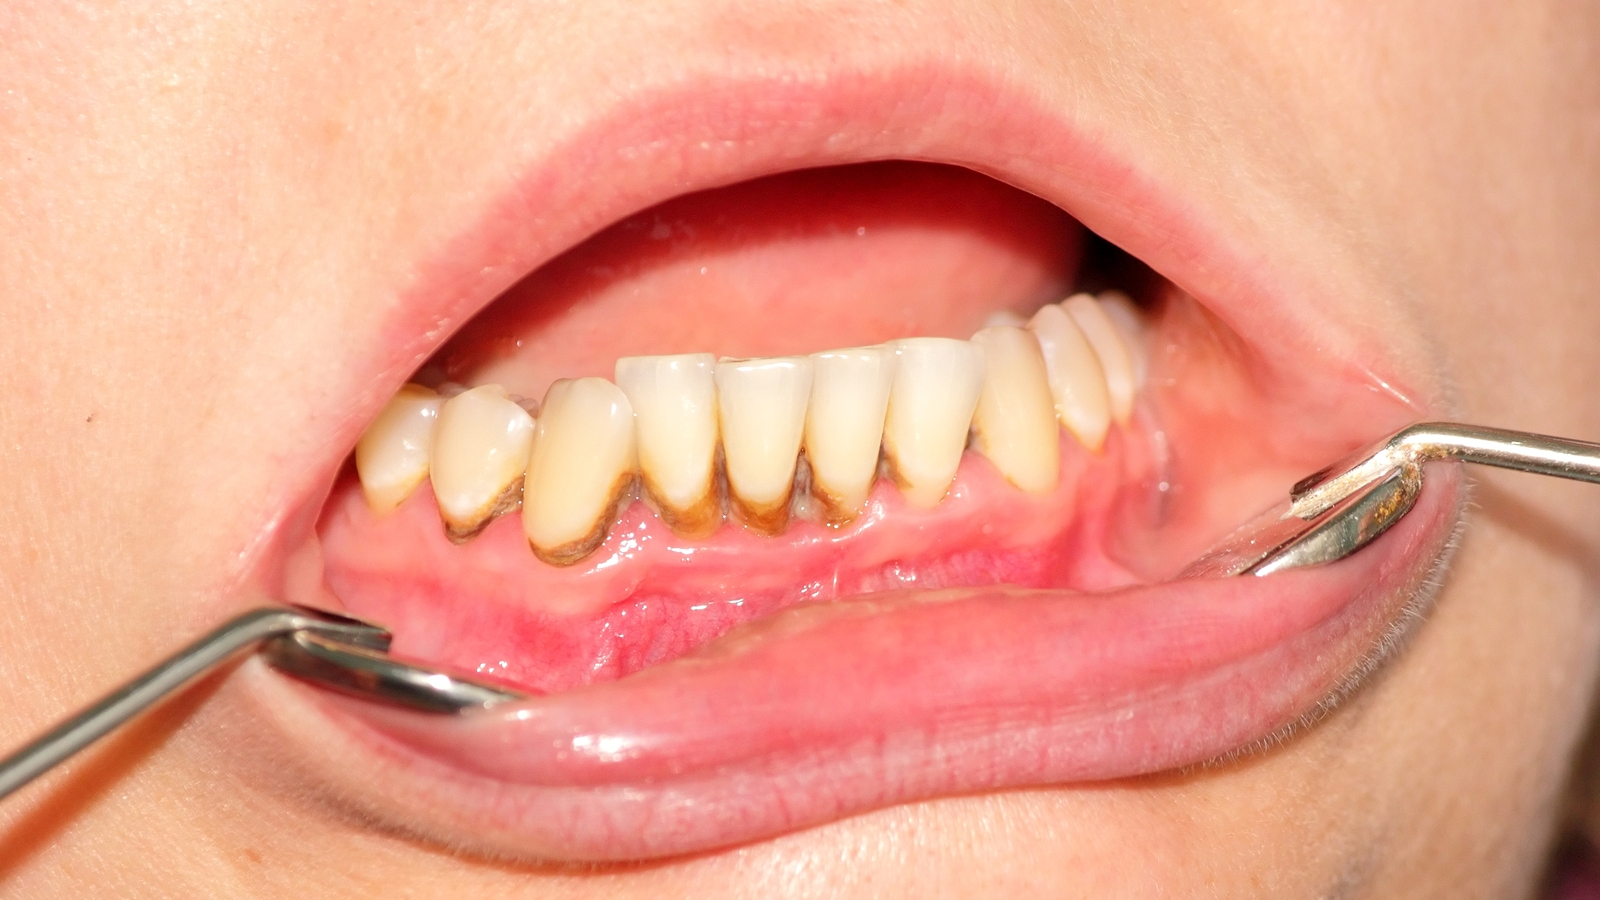 Divinyi Dentál - Rossz lehelet és fogkő? 3+1 tanács a jó szájhigiéniáért!